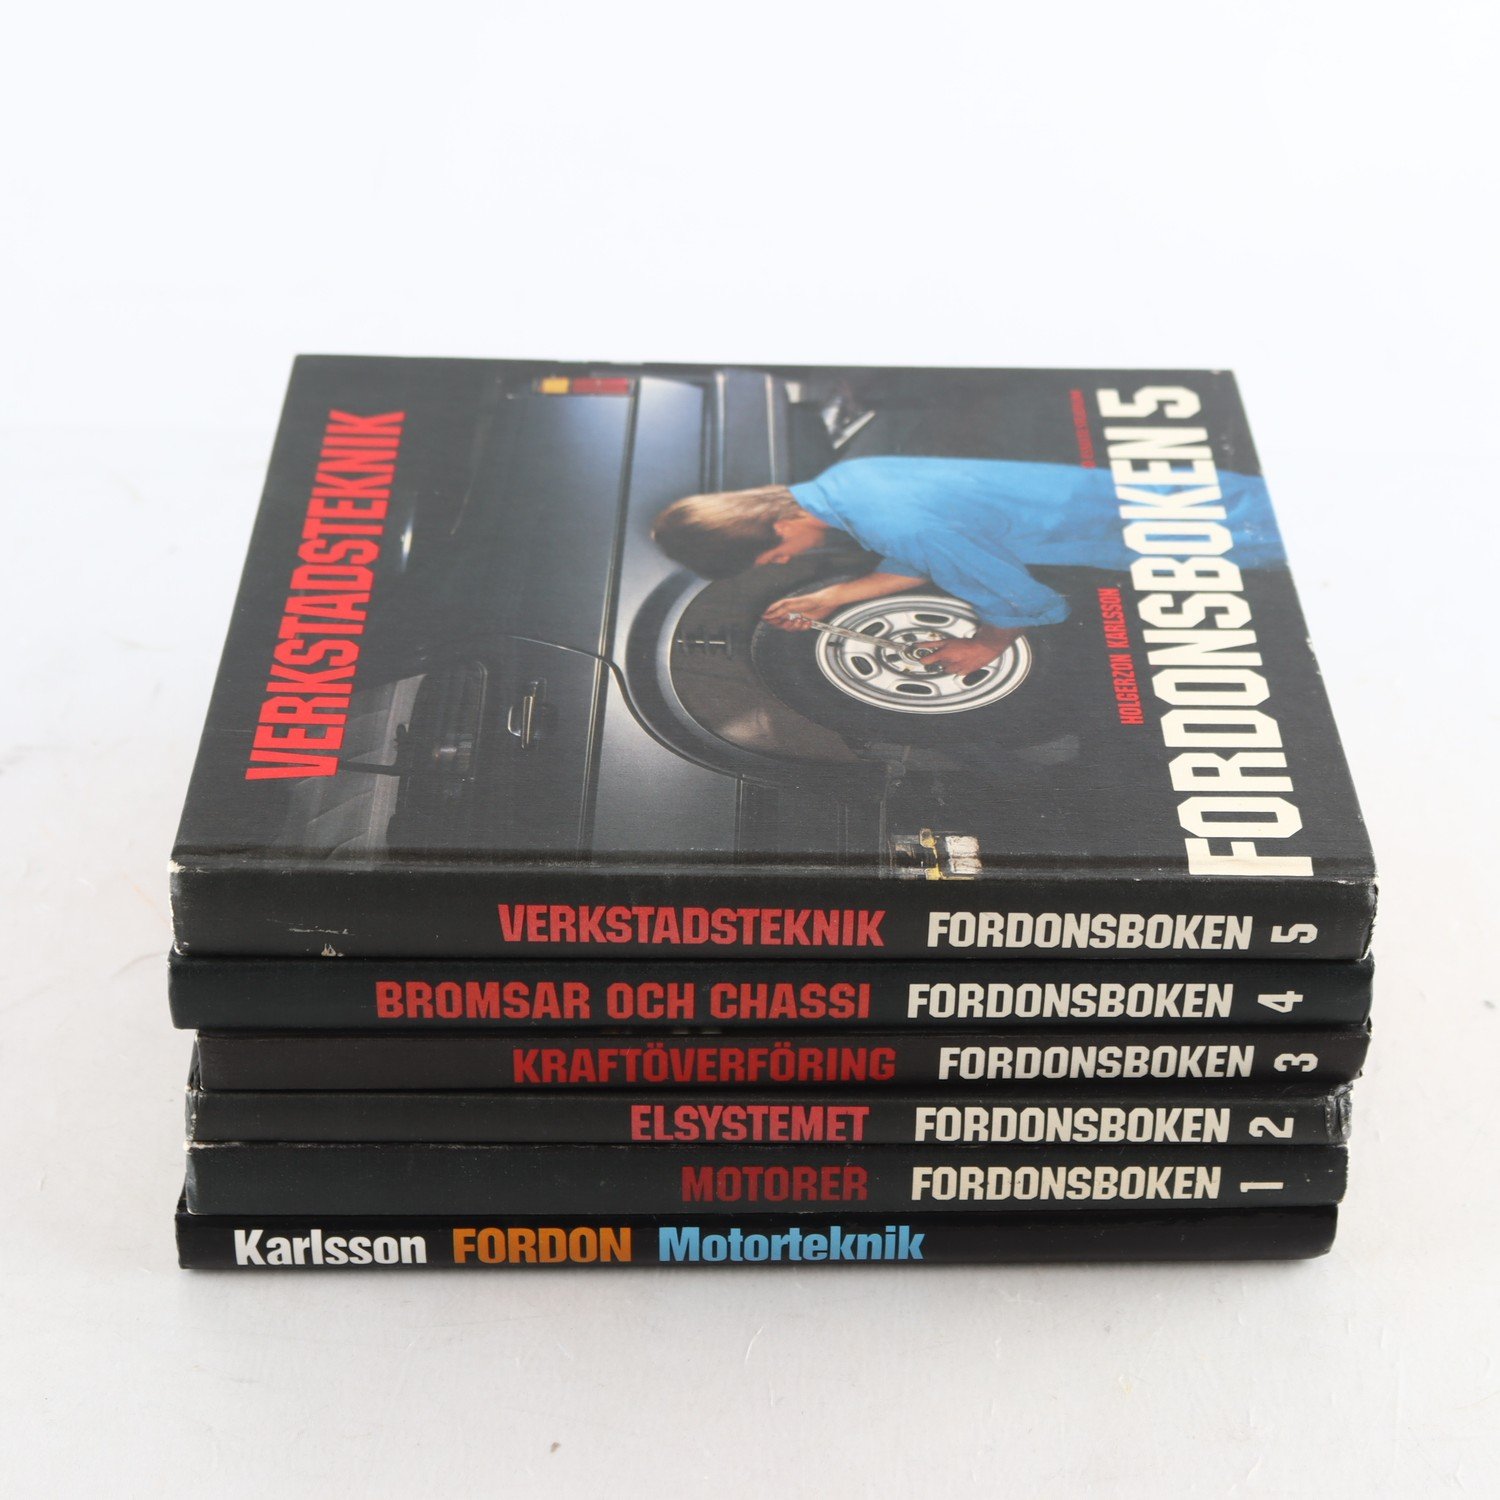 Fordonsboken, Vol. 1-5 + Motorteknik, Birger Karlsson m.fl. Samfraktas ej.